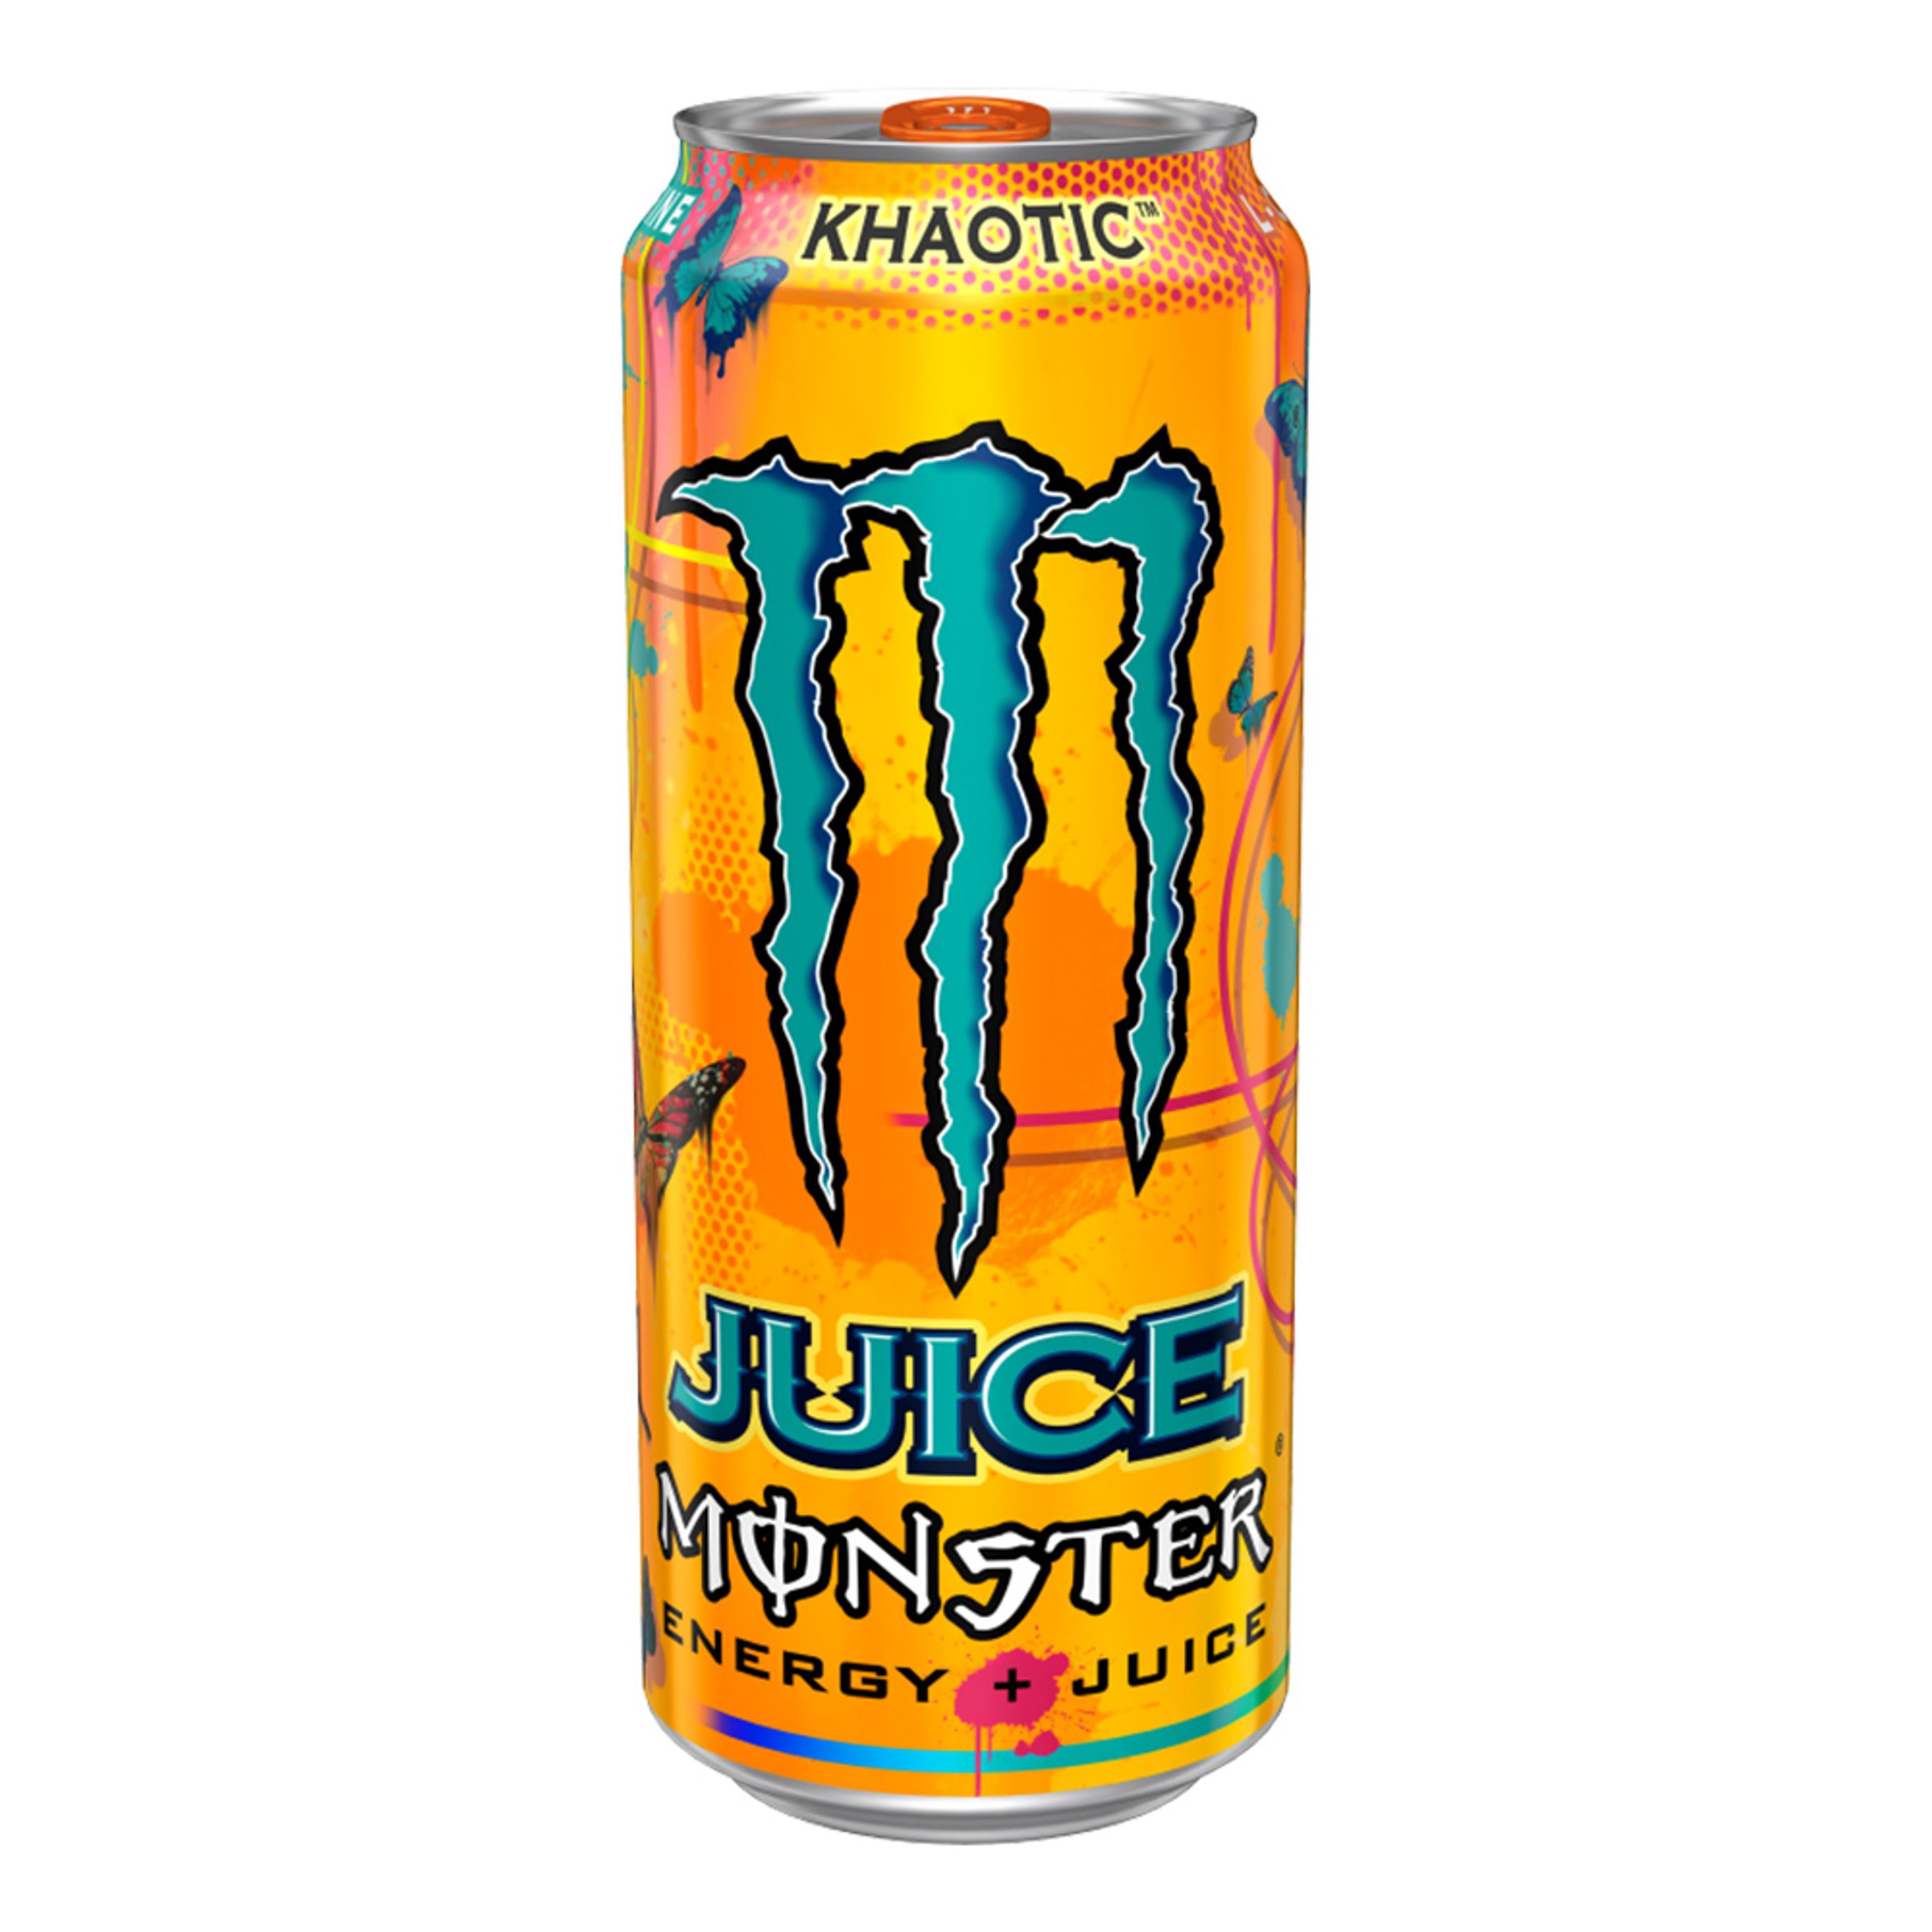 Läs mer om Monster Energy Juiced Khaotic - 24-pack